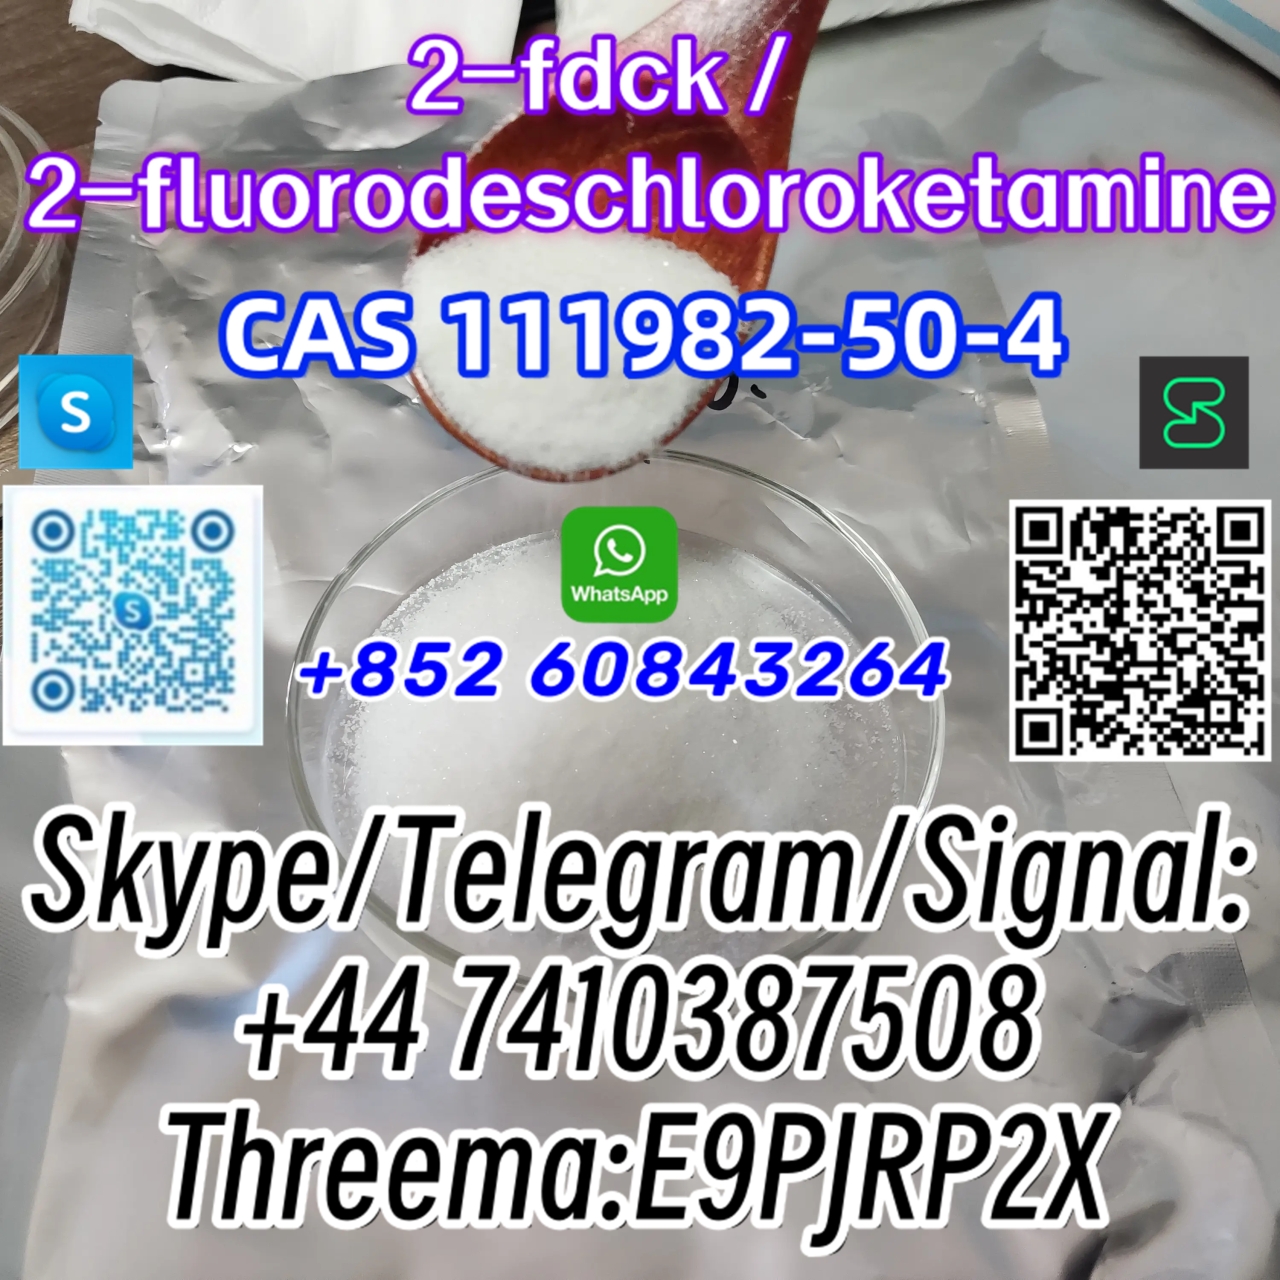 CAS 111982–50–4 2FDCK Skype/Telegram/Signal: +44 7410387508 Threema:E9PJRP2X-1 24.04.2024 - CAS 111982–50–4 2FDCK   Skype/Telegram/Signal:
+44 7410387508
Threema:E9PJRP2X